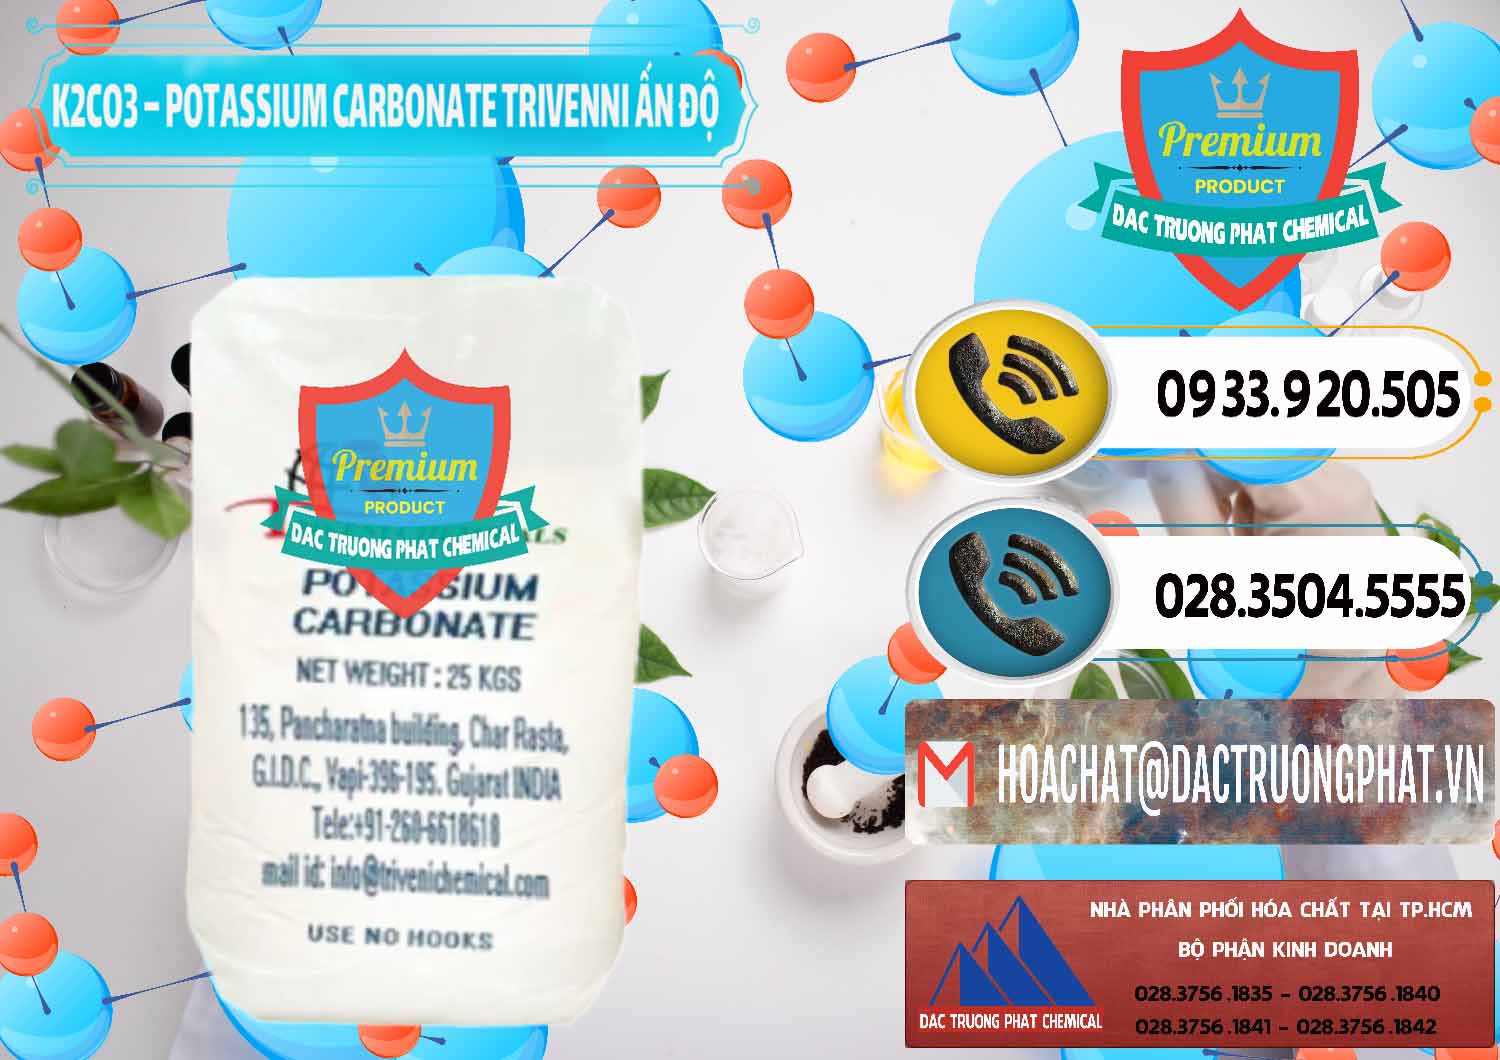 Nơi phân phối & bán K2Co3 – Potassium Carbonate Trivenni Ấn Độ India - 0473 - Công ty chuyên cung cấp _ nhập khẩu hóa chất tại TP.HCM - hoachatdetnhuom.vn